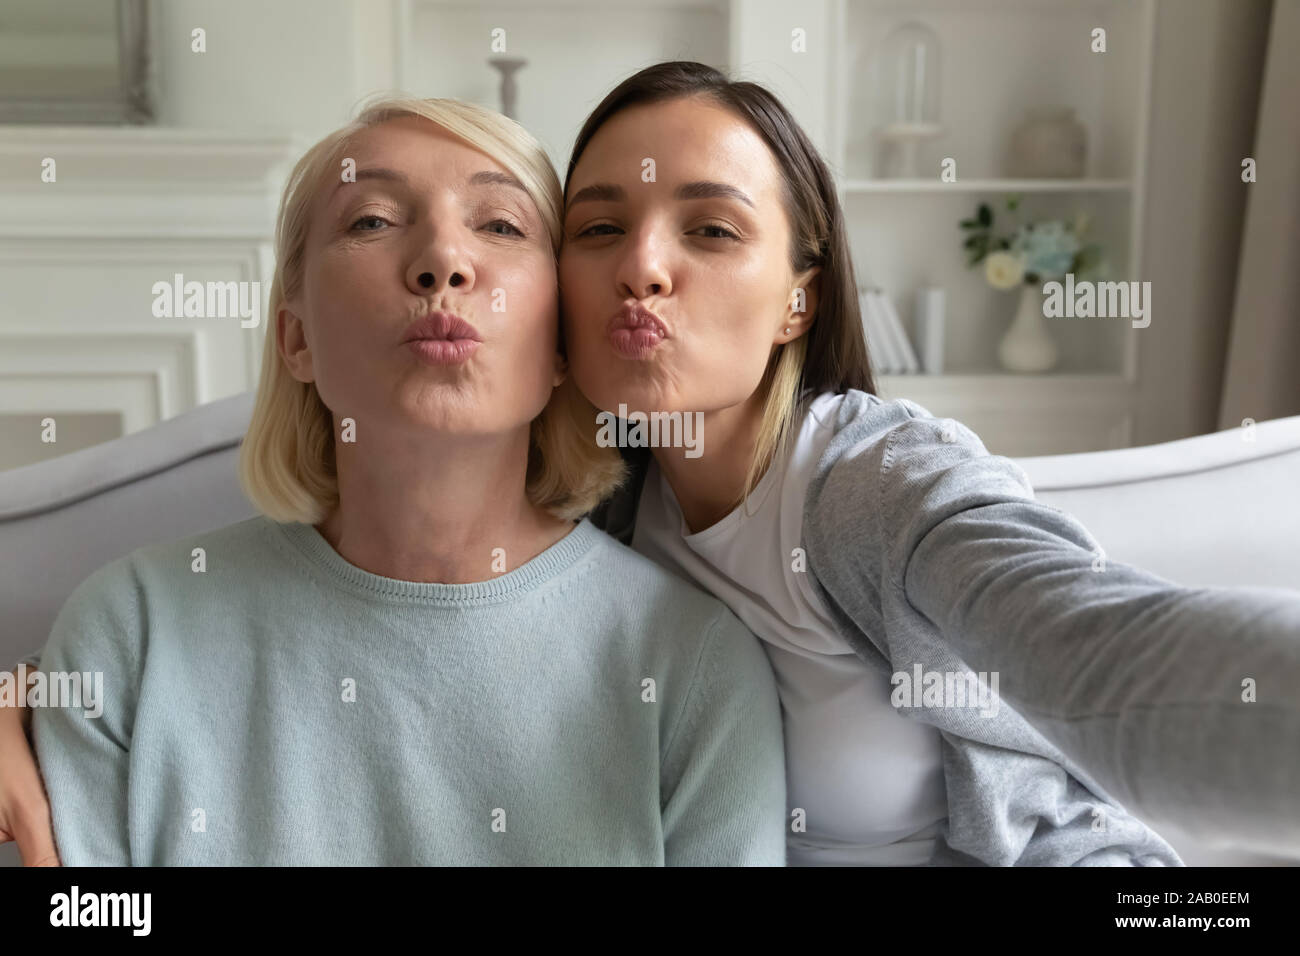 Mutter und erwachsene Tochter posiert, selfie Webcam Blick Stockfotografie  - Alamy